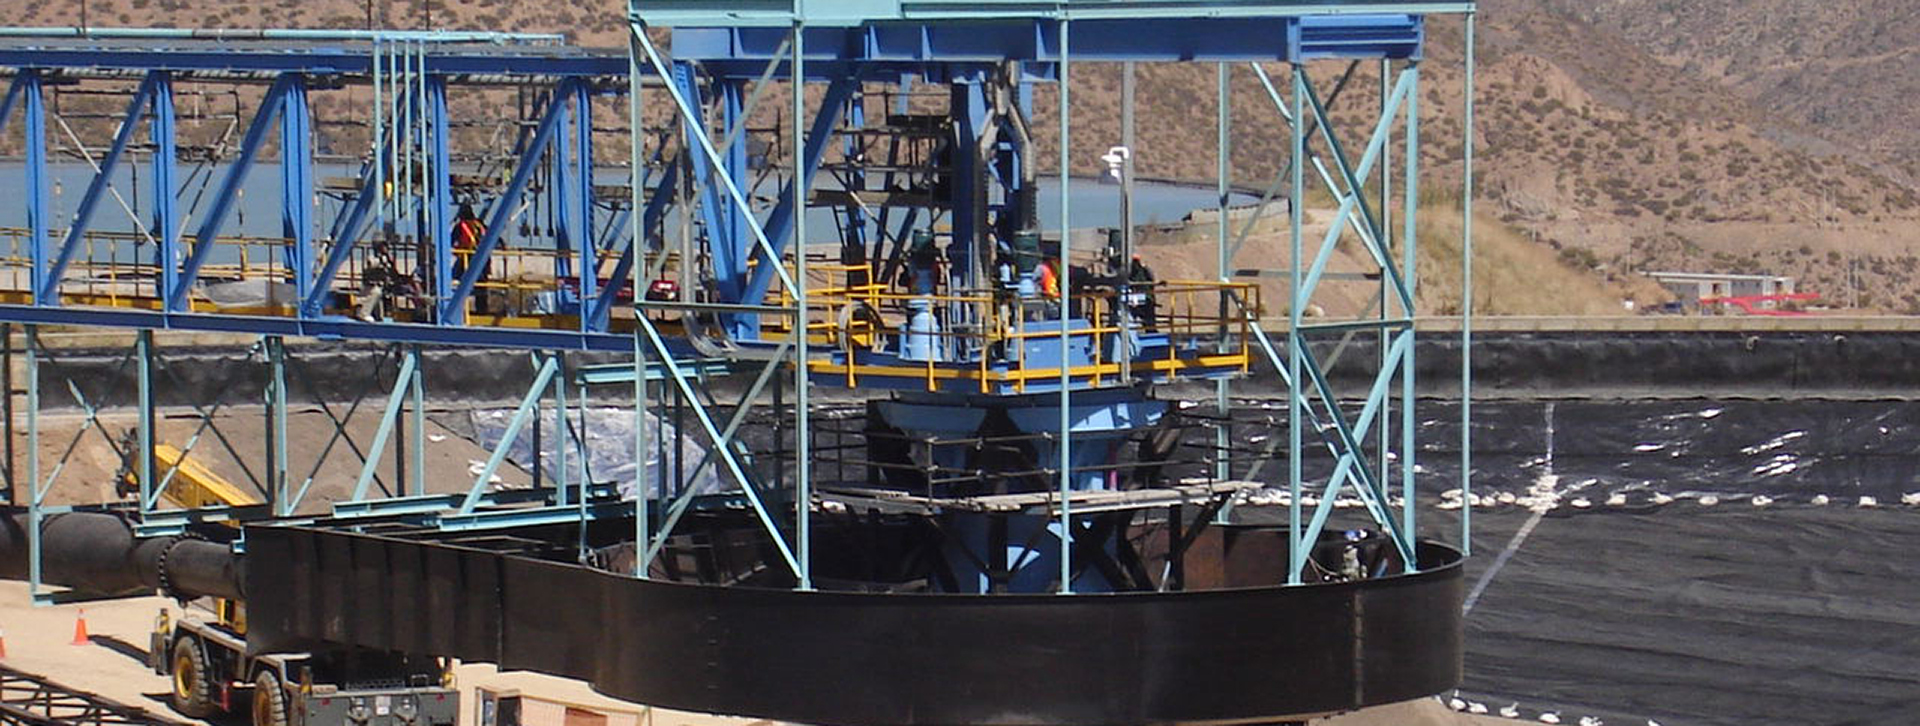 Vial y Vives - DSD, proyecto de repotenciamiento II de la mina Los Pelambres en la IV Región de Coquimbo, Chile